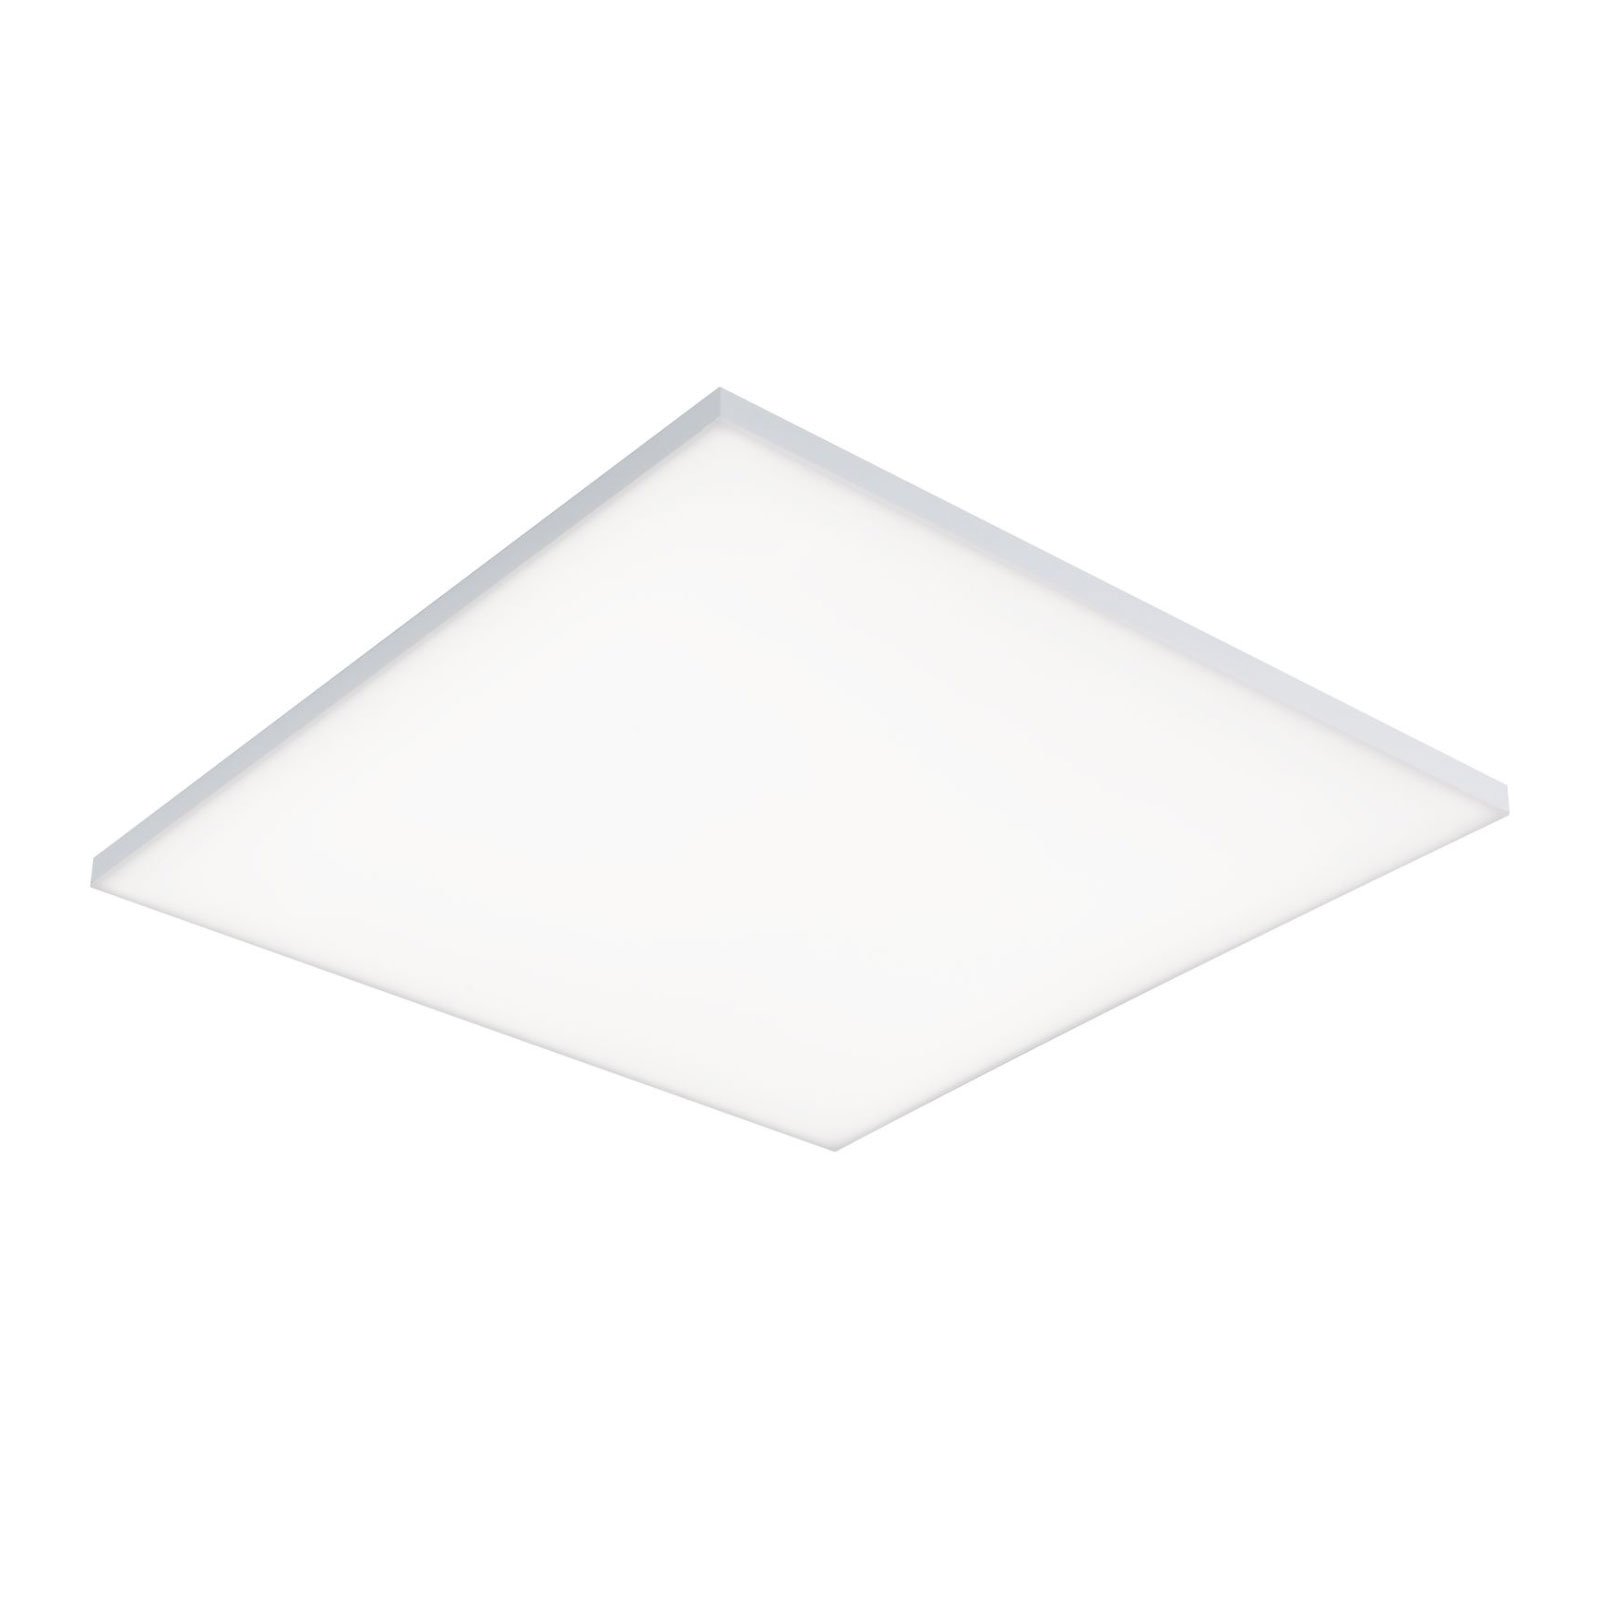 Paulmann Velora LED ceiling light 59.5 x 59.5cm